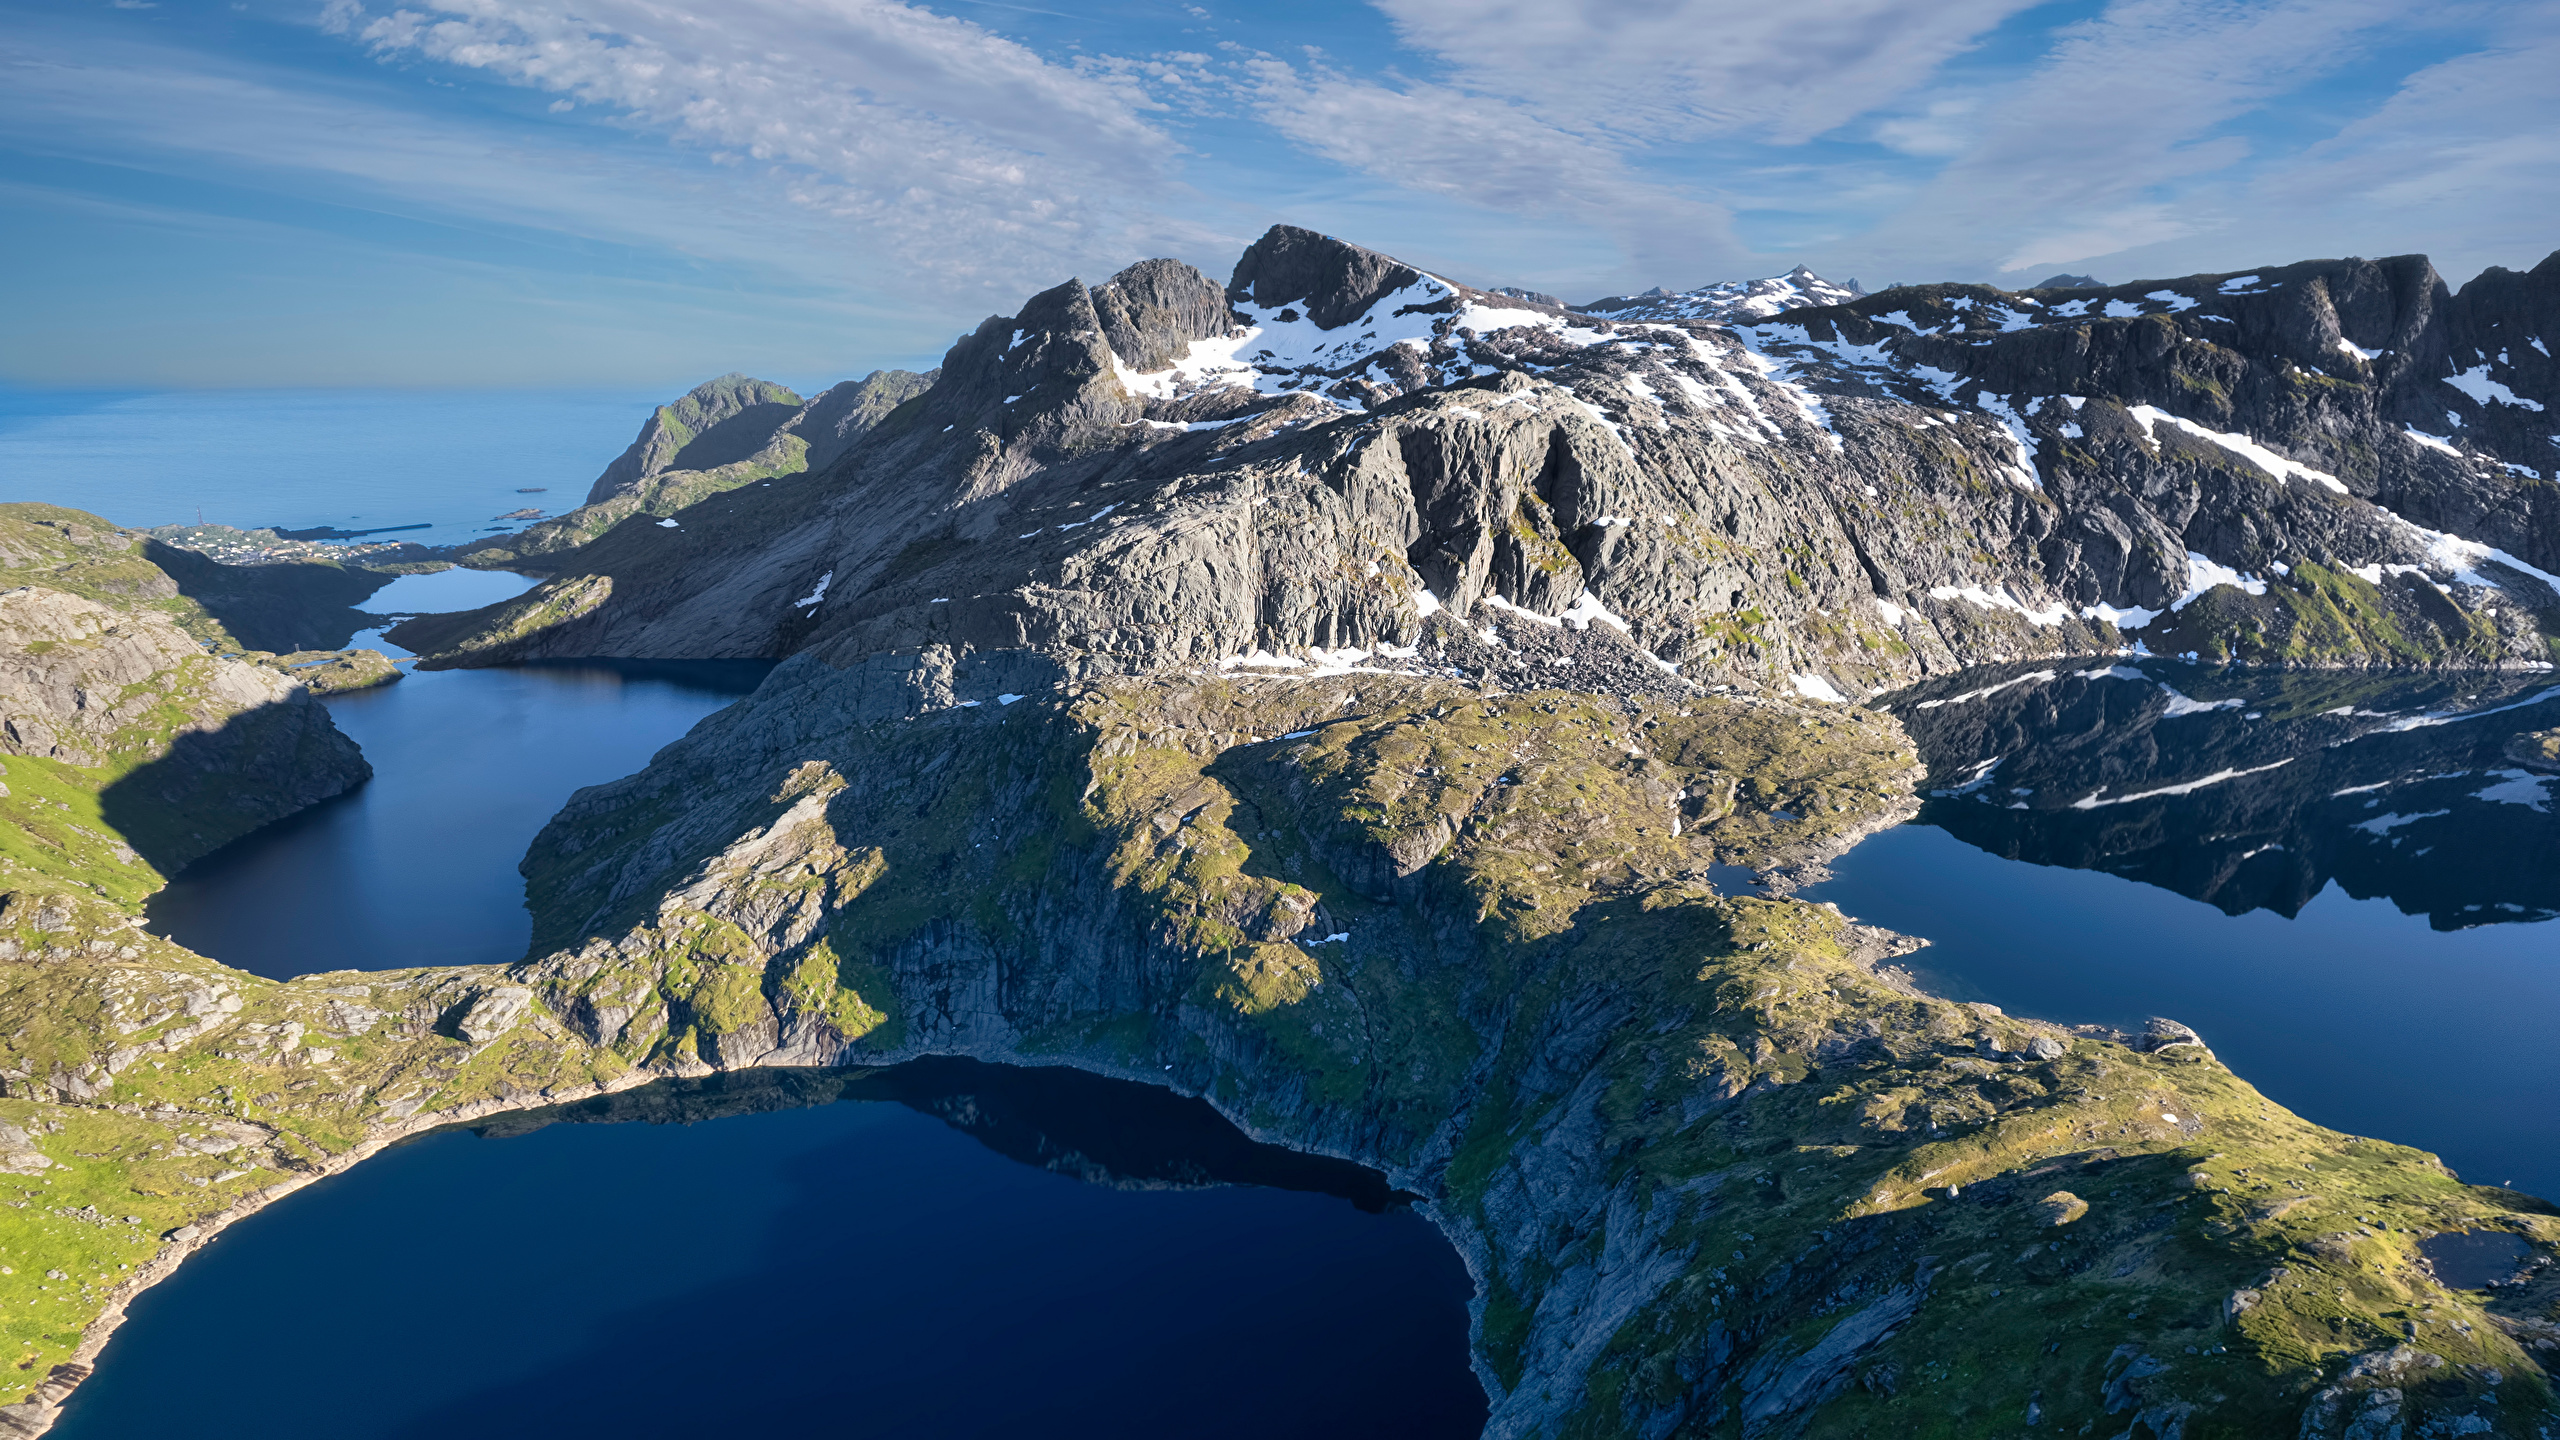 Обои для рабочего стола Лофотенские острова Норвегия Reine Горы Природа Озеро 2560x1440 гора